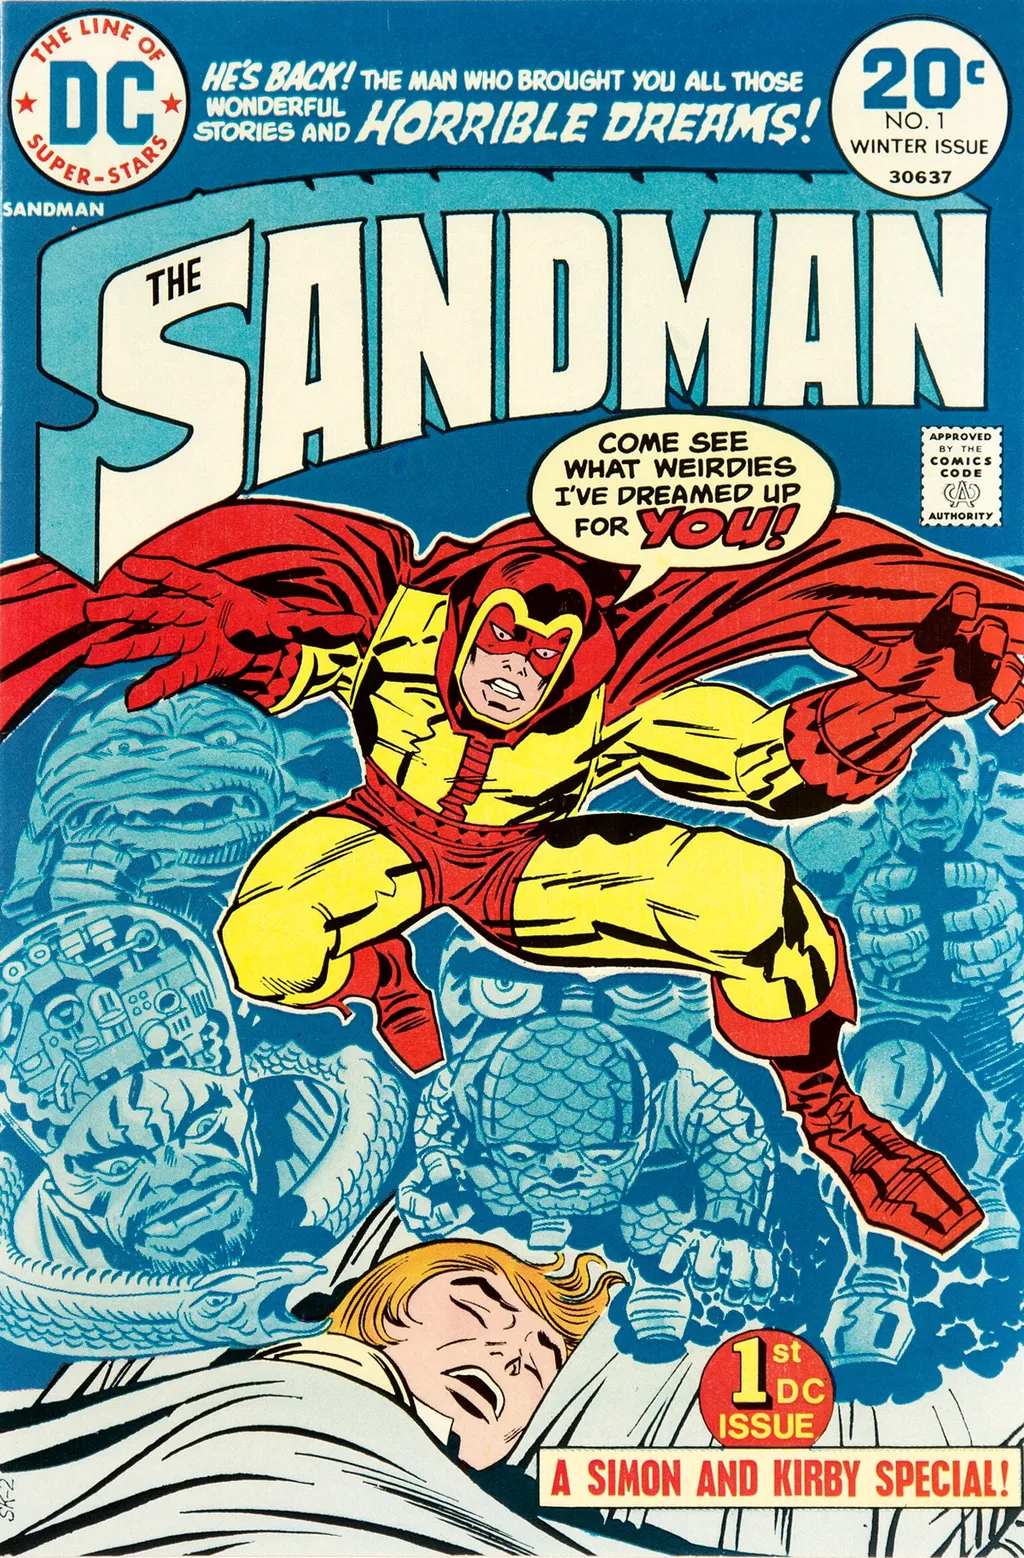 O Sandman da Era de Prata dos Quadrinhos, Garrett Sandford (Imagem: Reprodução/DC Comics)